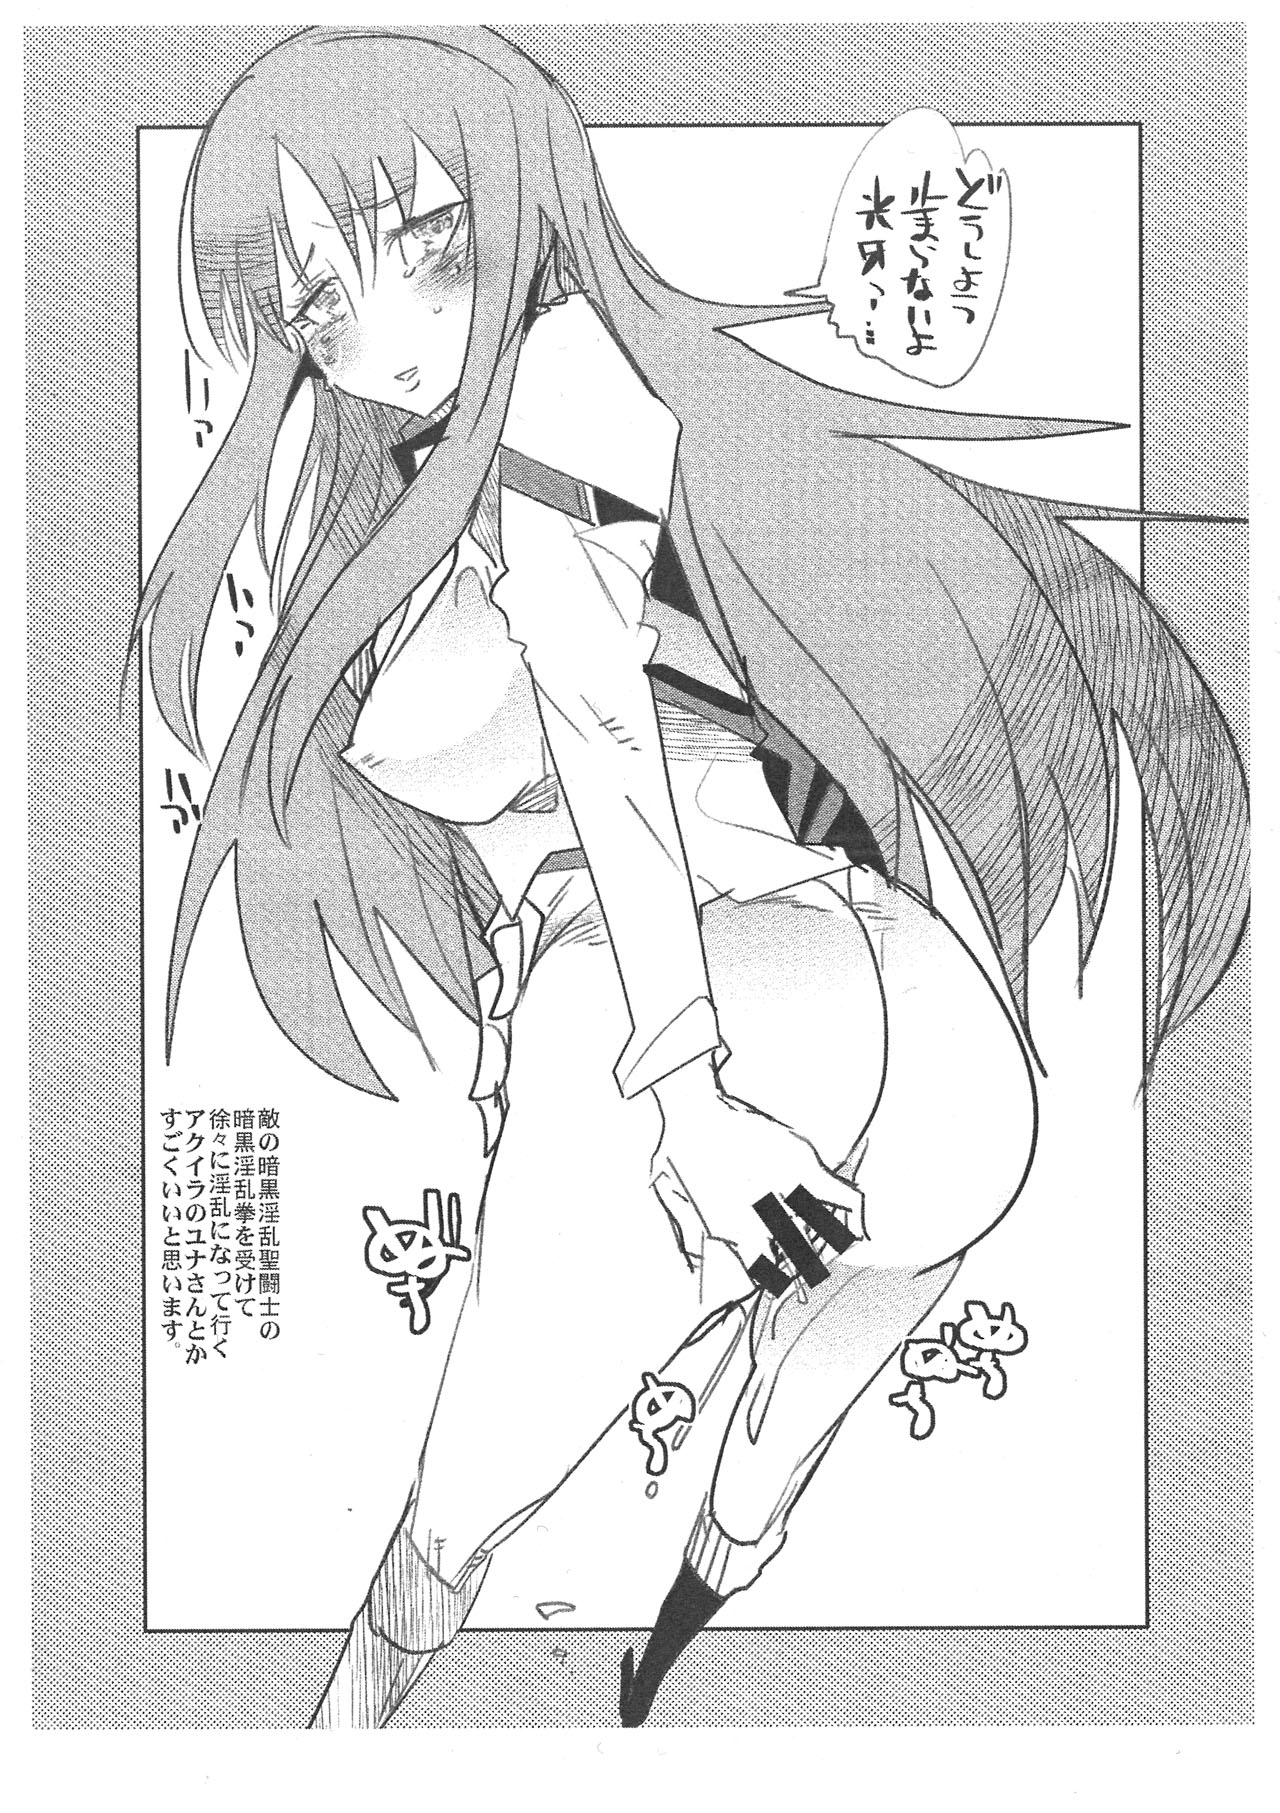 (COMIC1☆6) [ブロンコ一人旅 (内々けやき)] 春アニメのナイスキャラと夏に向けてのこんな感じの描きたいコピー誌 (よろず)